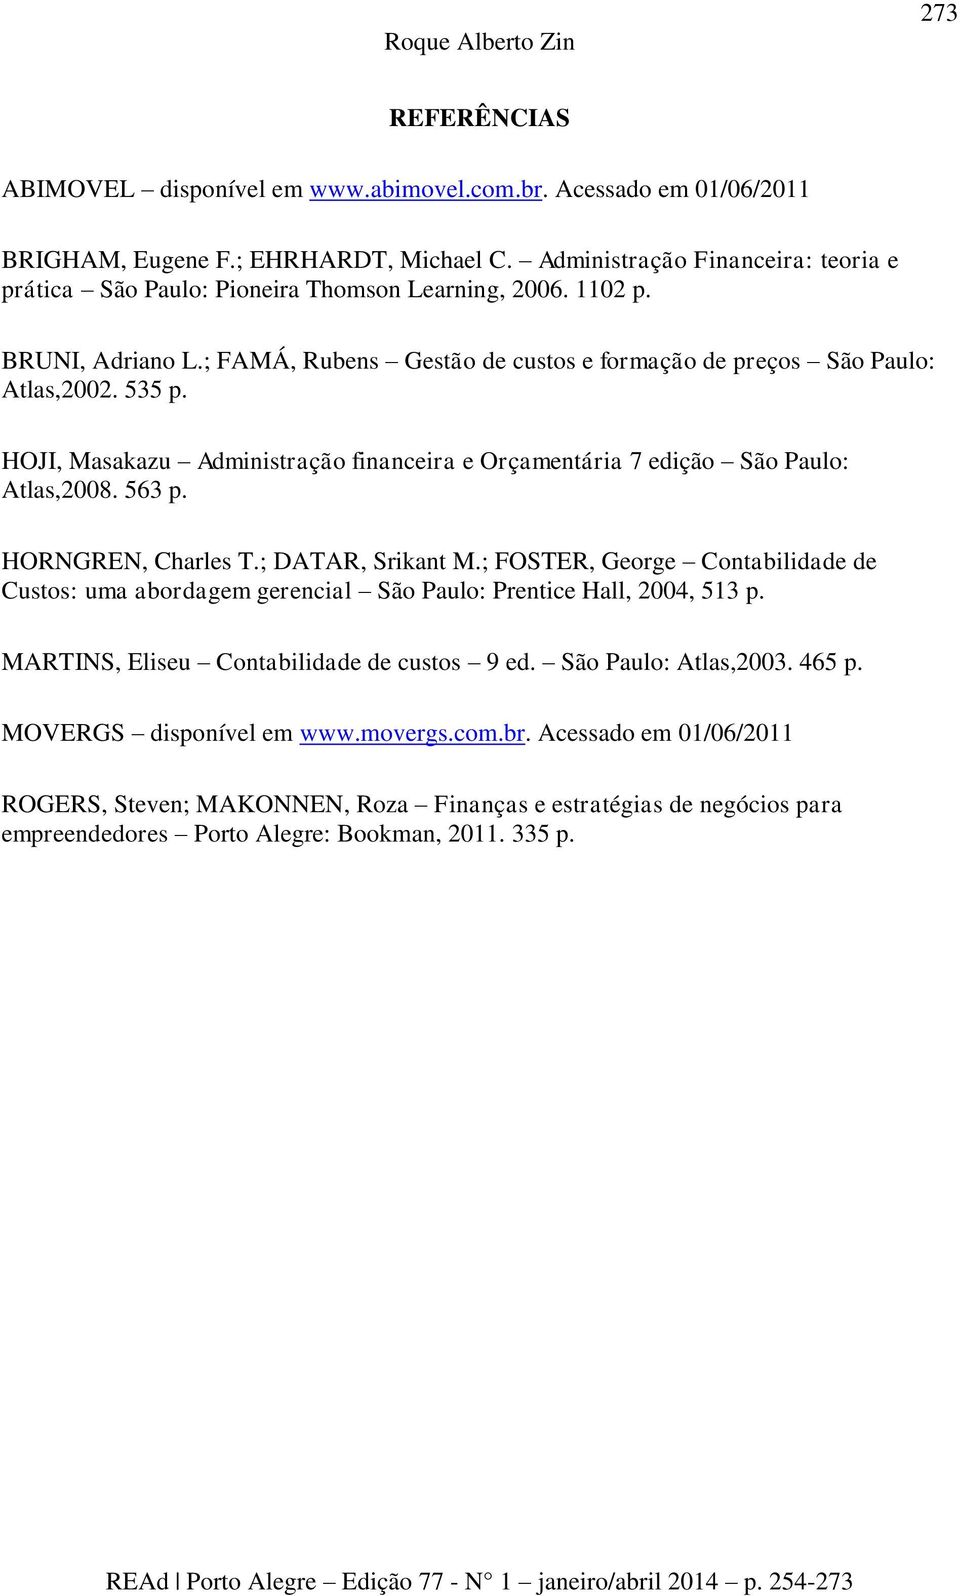 HOJI, Masakazu Administração financeira e Orçamentária 7 edição São Paulo: Atlas,2008. 563 p. HORNGREN, Charles T.; DATAR, Srikant M.